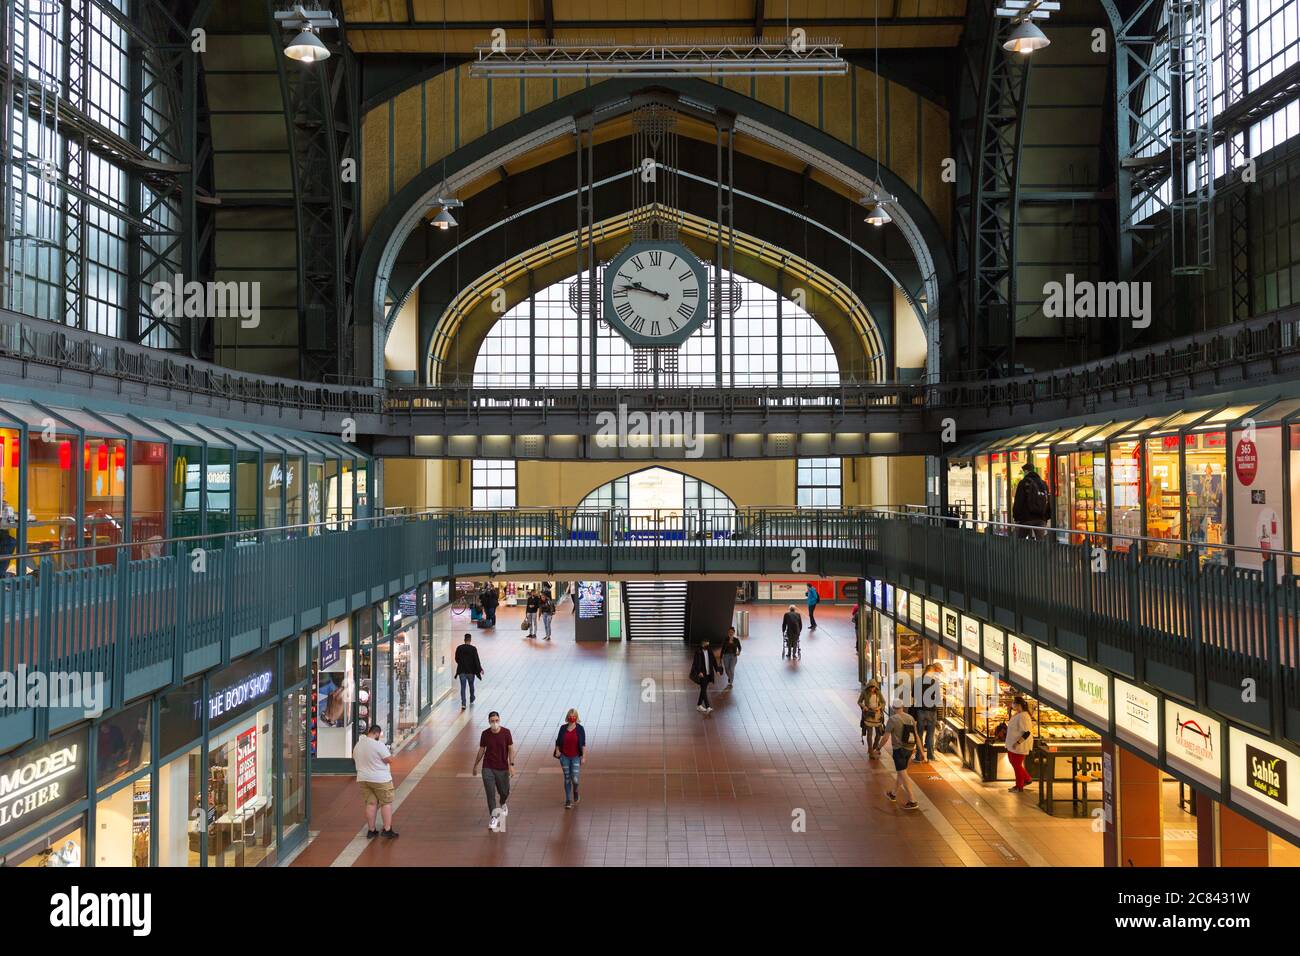 Vista interior de Hamburg Hauptbahnhof - la estación central de tren. La estación de tren de larga distancia alemana más frecuentada. Foto de stock